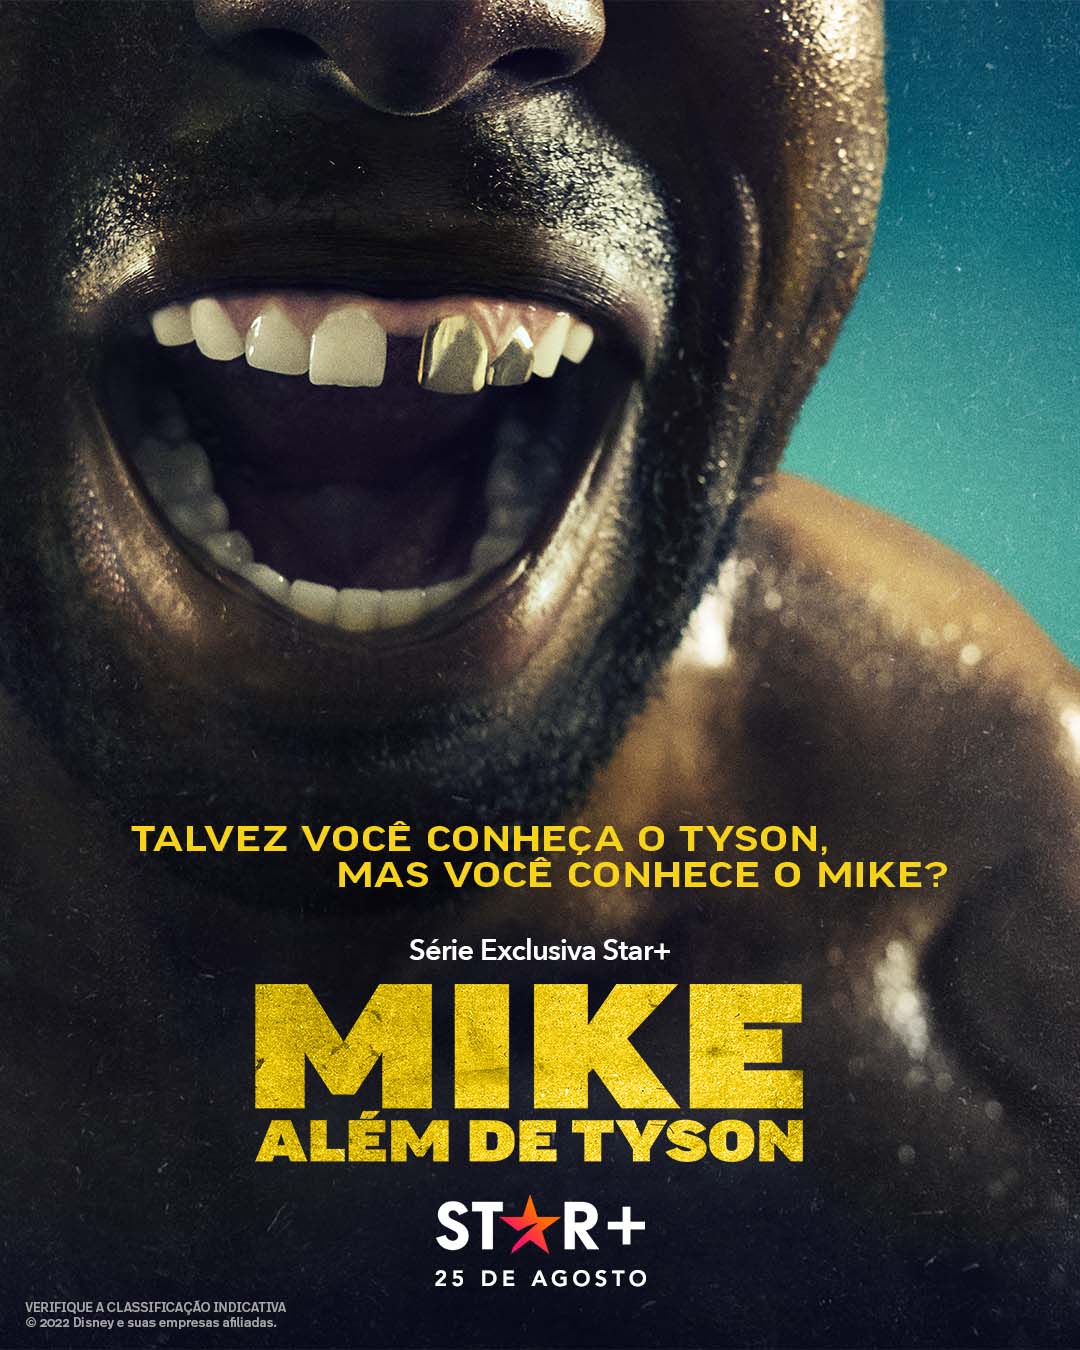 Mike-Alem-de-Tyson-minisserie